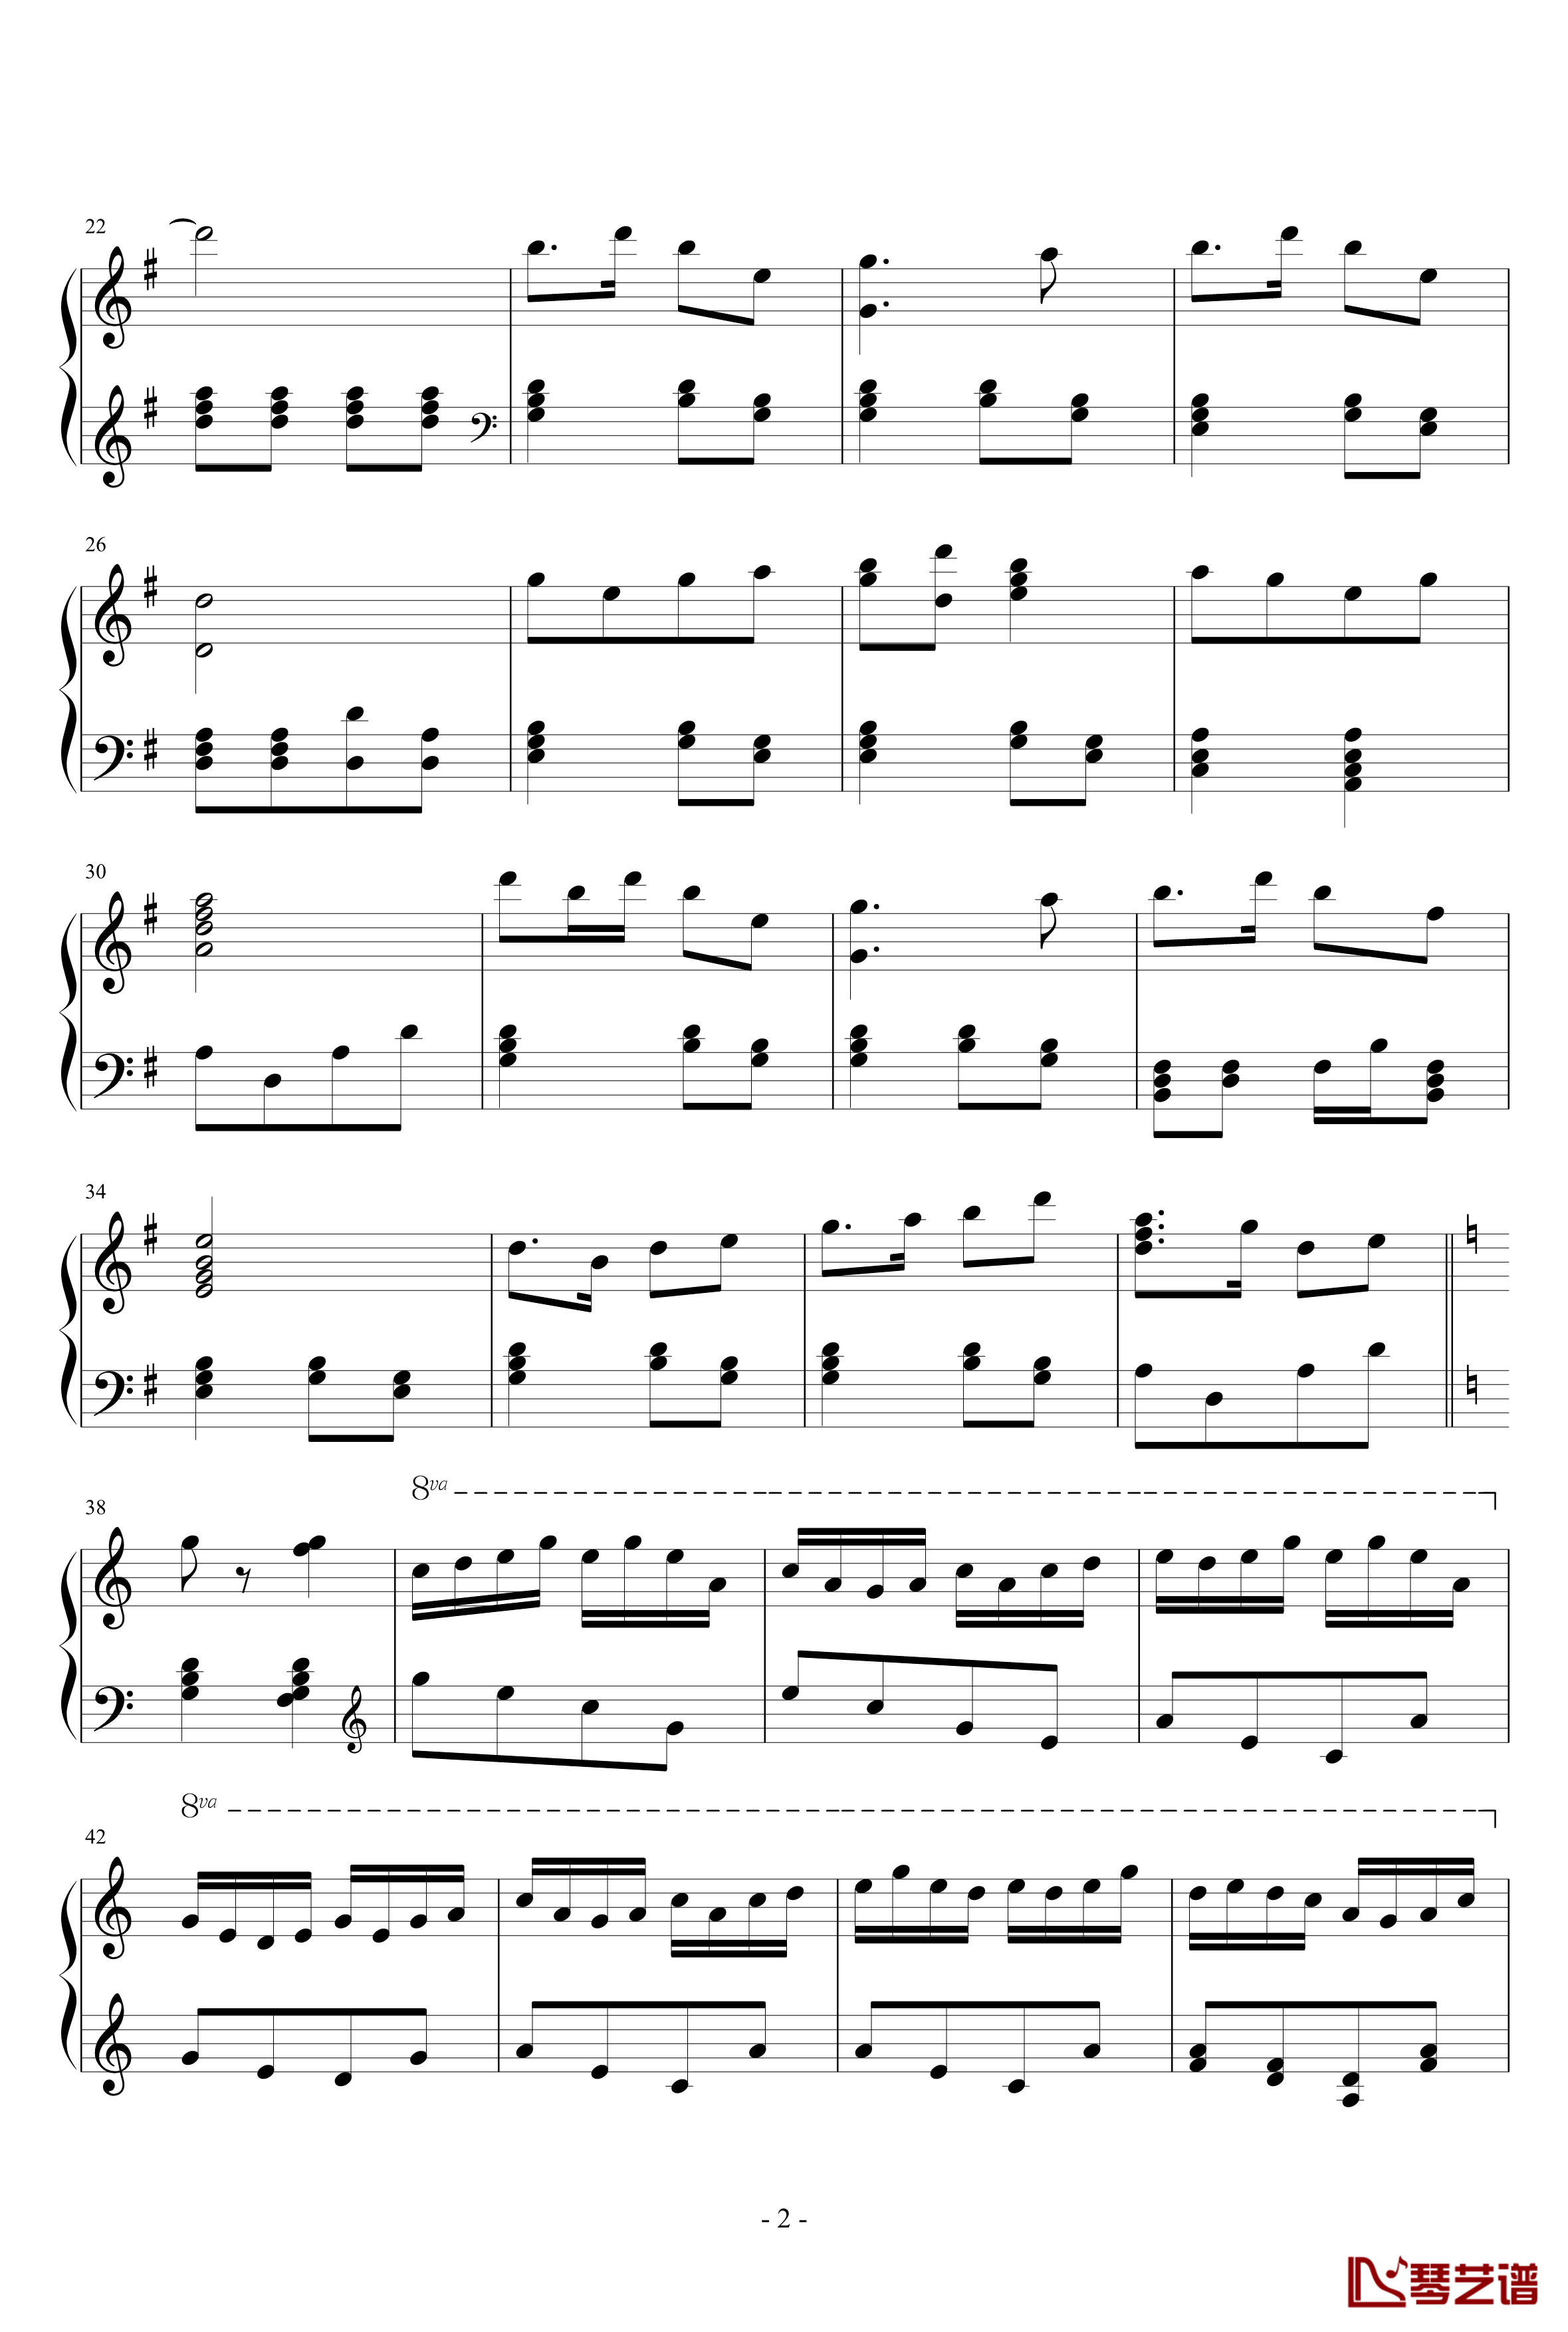 闹春钢琴谱-完整版-中国名曲